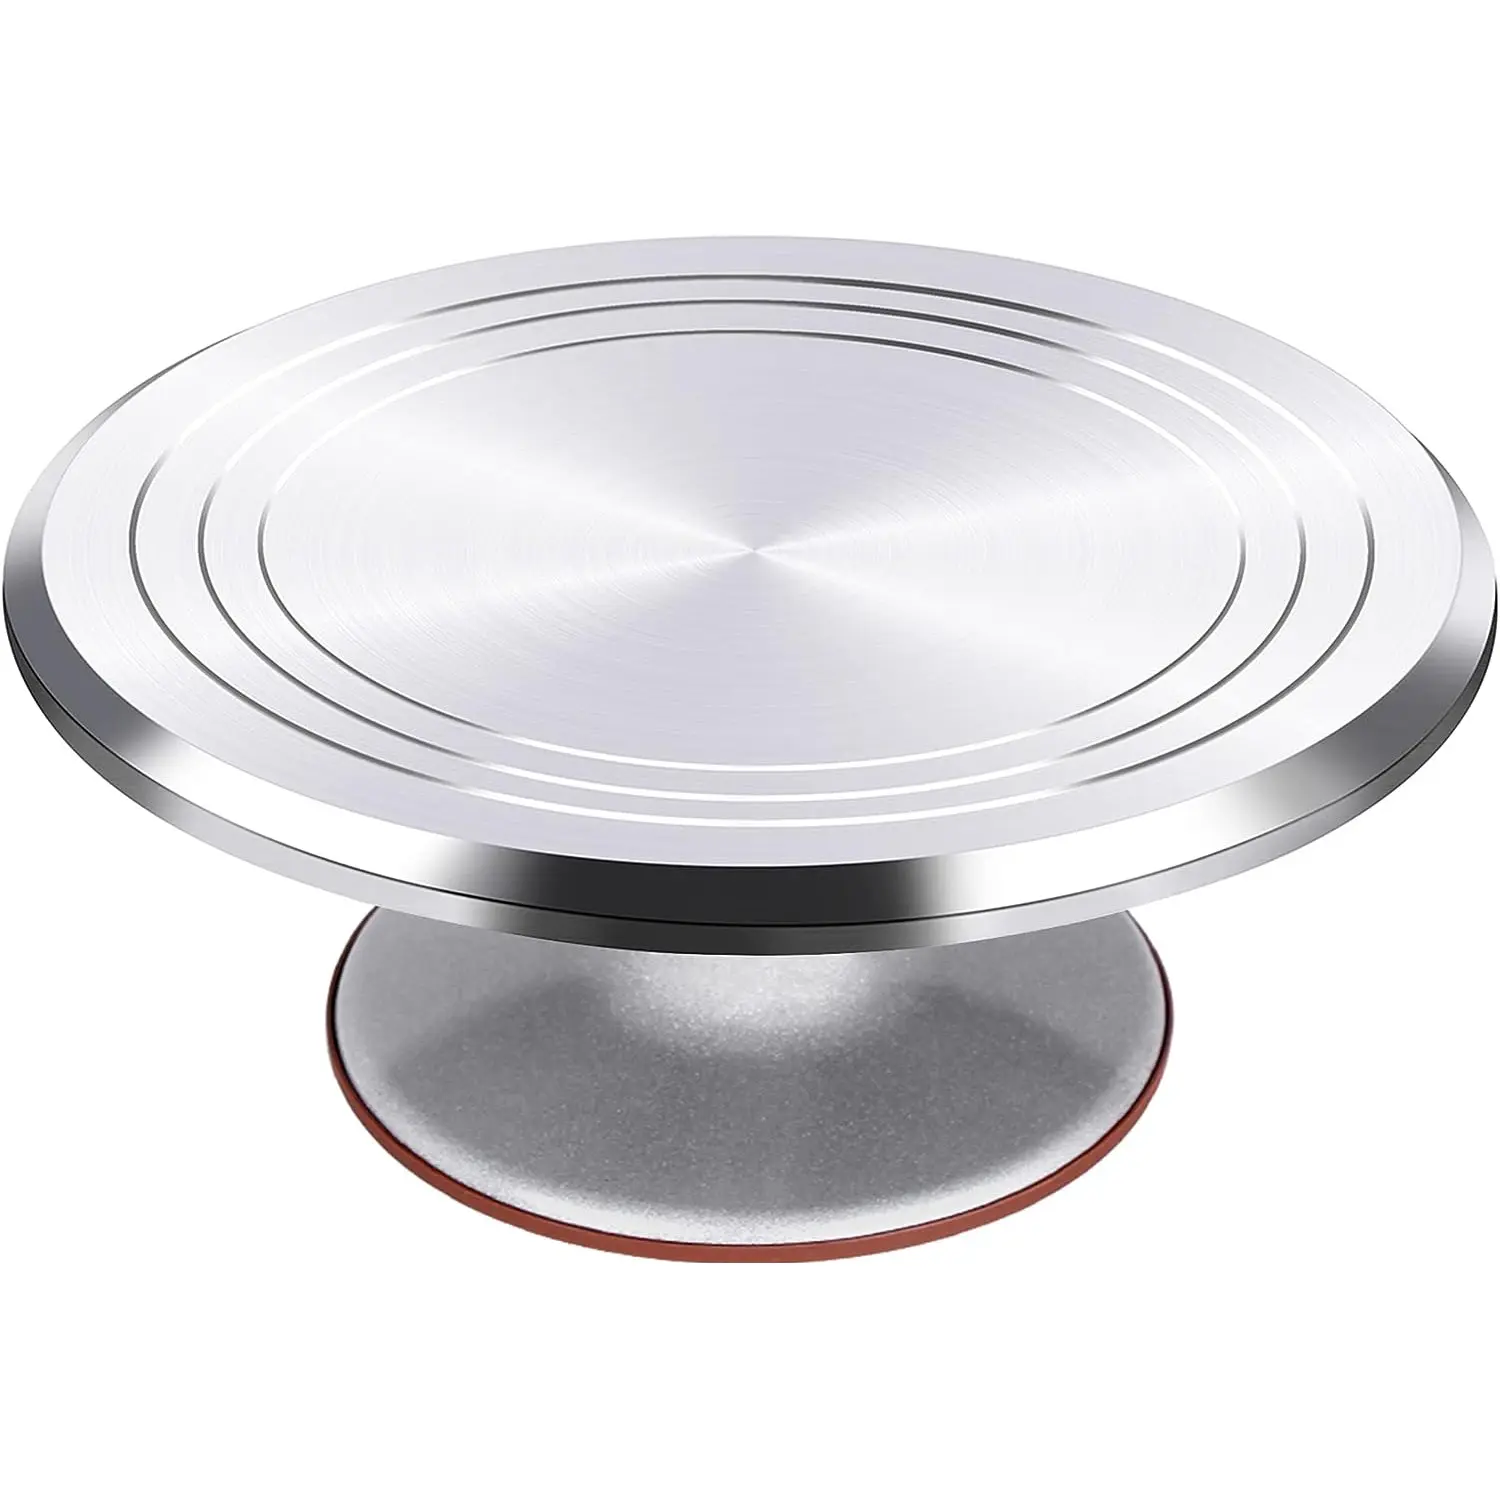 Venta caliente antideslizante aleación de aluminio soporte para pasteles decoración de pasteles plato giratorio